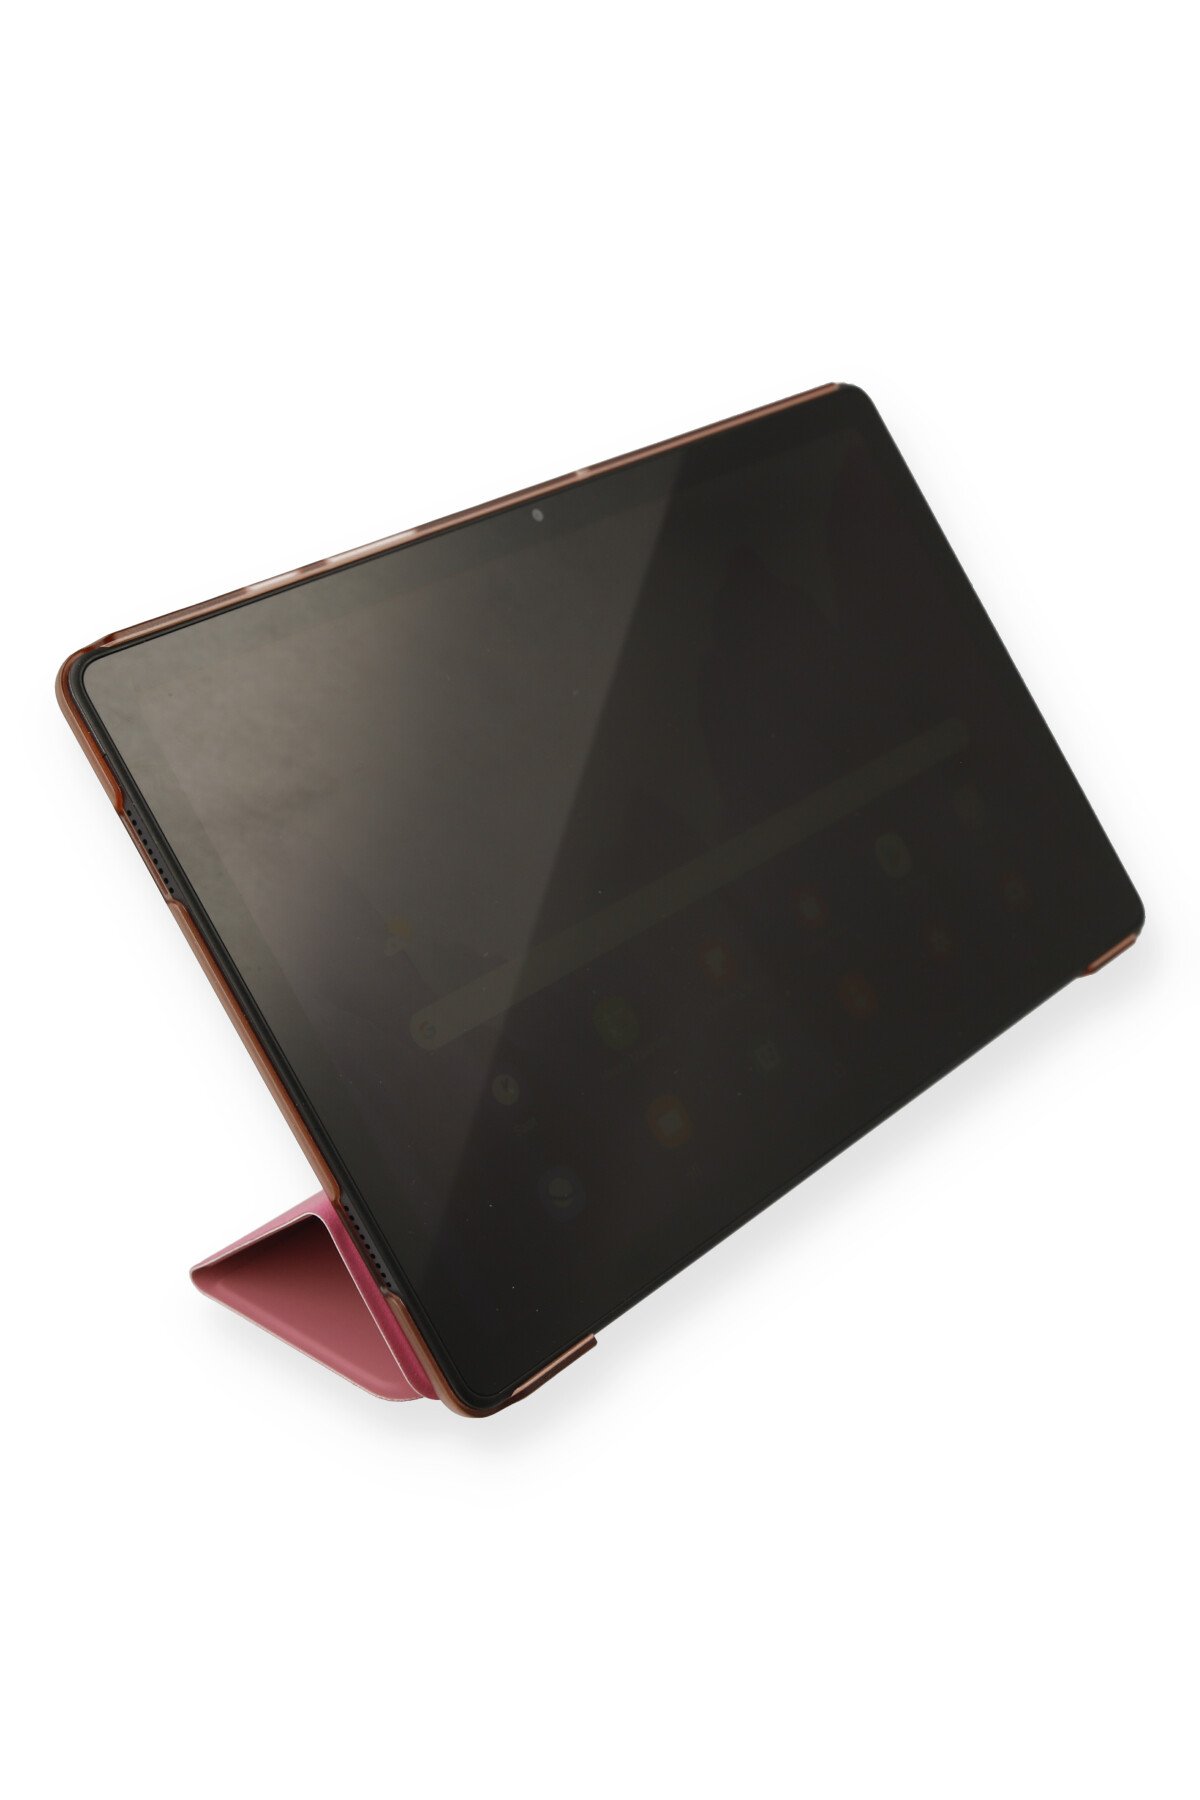 Newface iPad Pro 12.9 (2018) Kılıf Strap-C Otterbox Tablet Kapak - Siyah